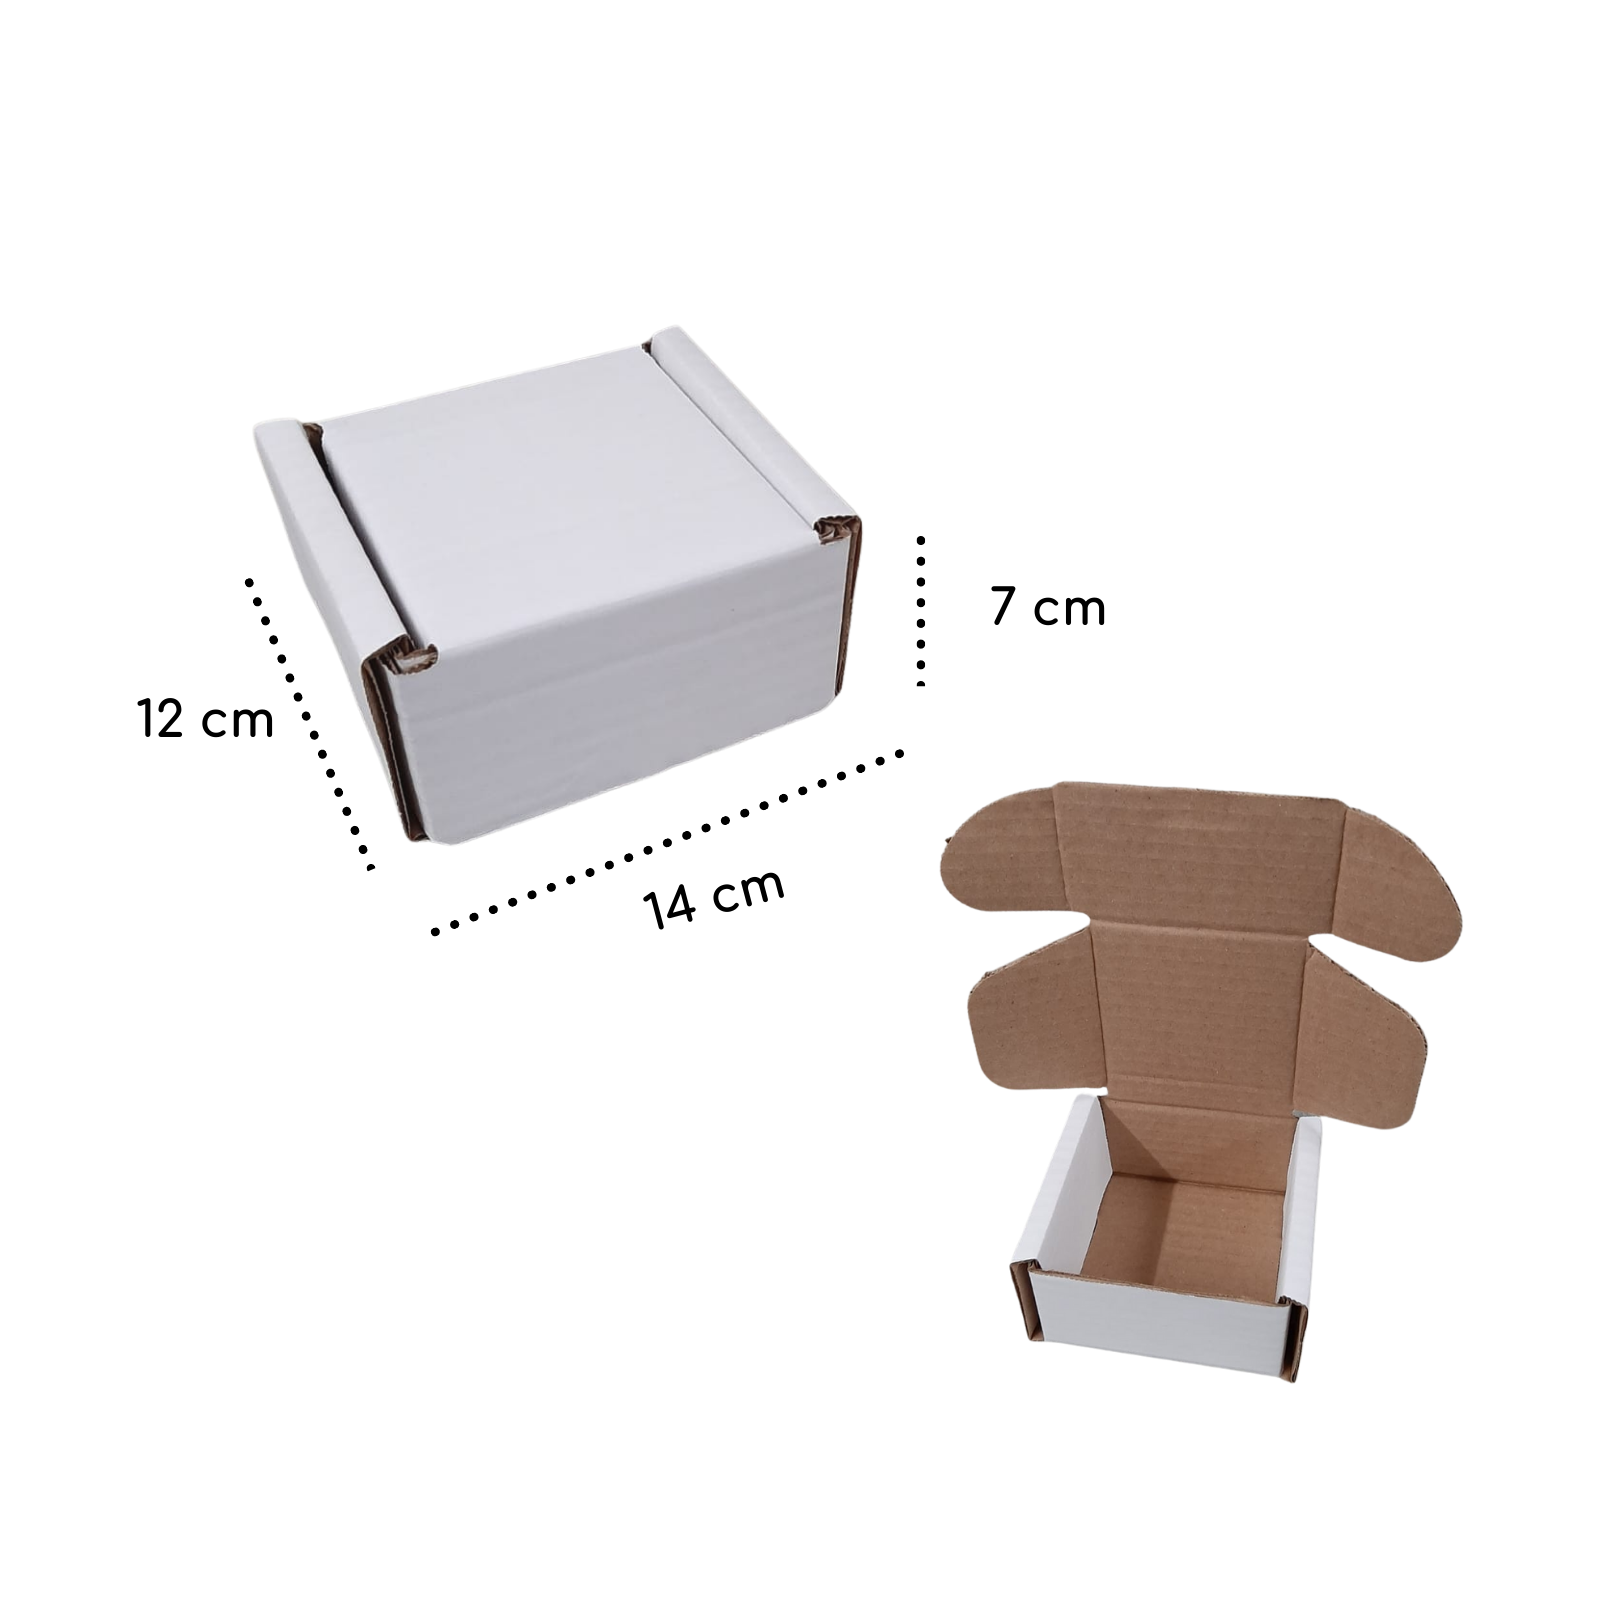 Cajas de cartón corrugado blanco, 14 x 14 x 14 , cubo para $1.97 En línea